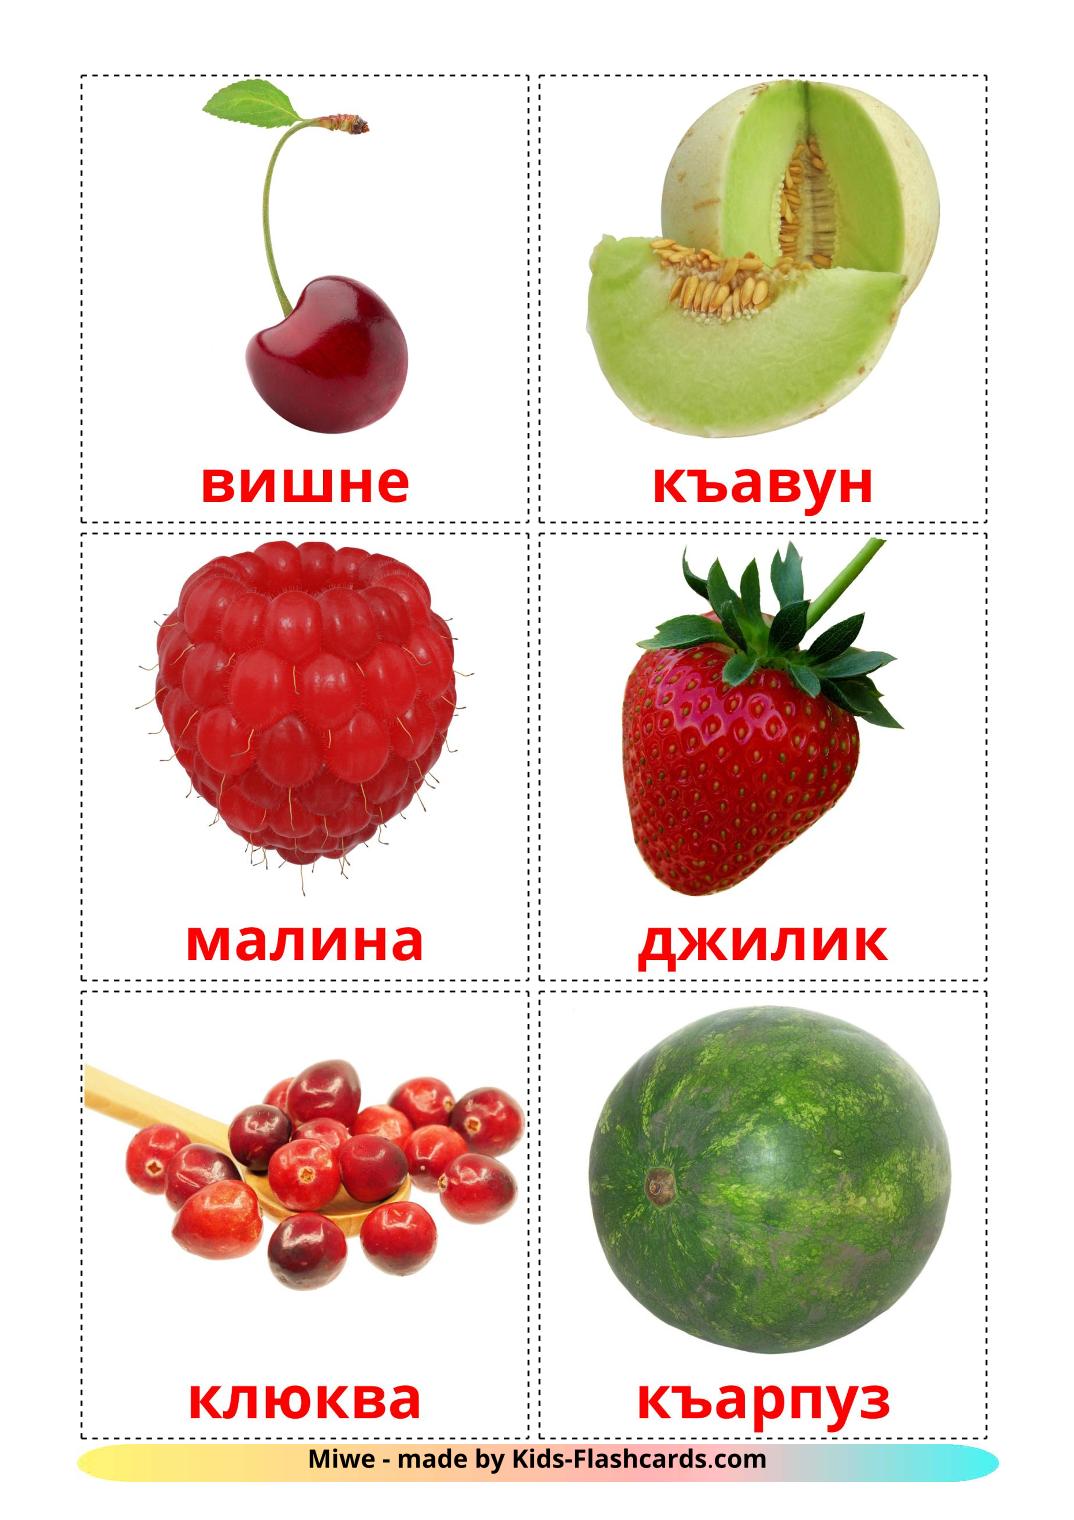 Baies - 11 Flashcards turkmène imprimables gratuitement